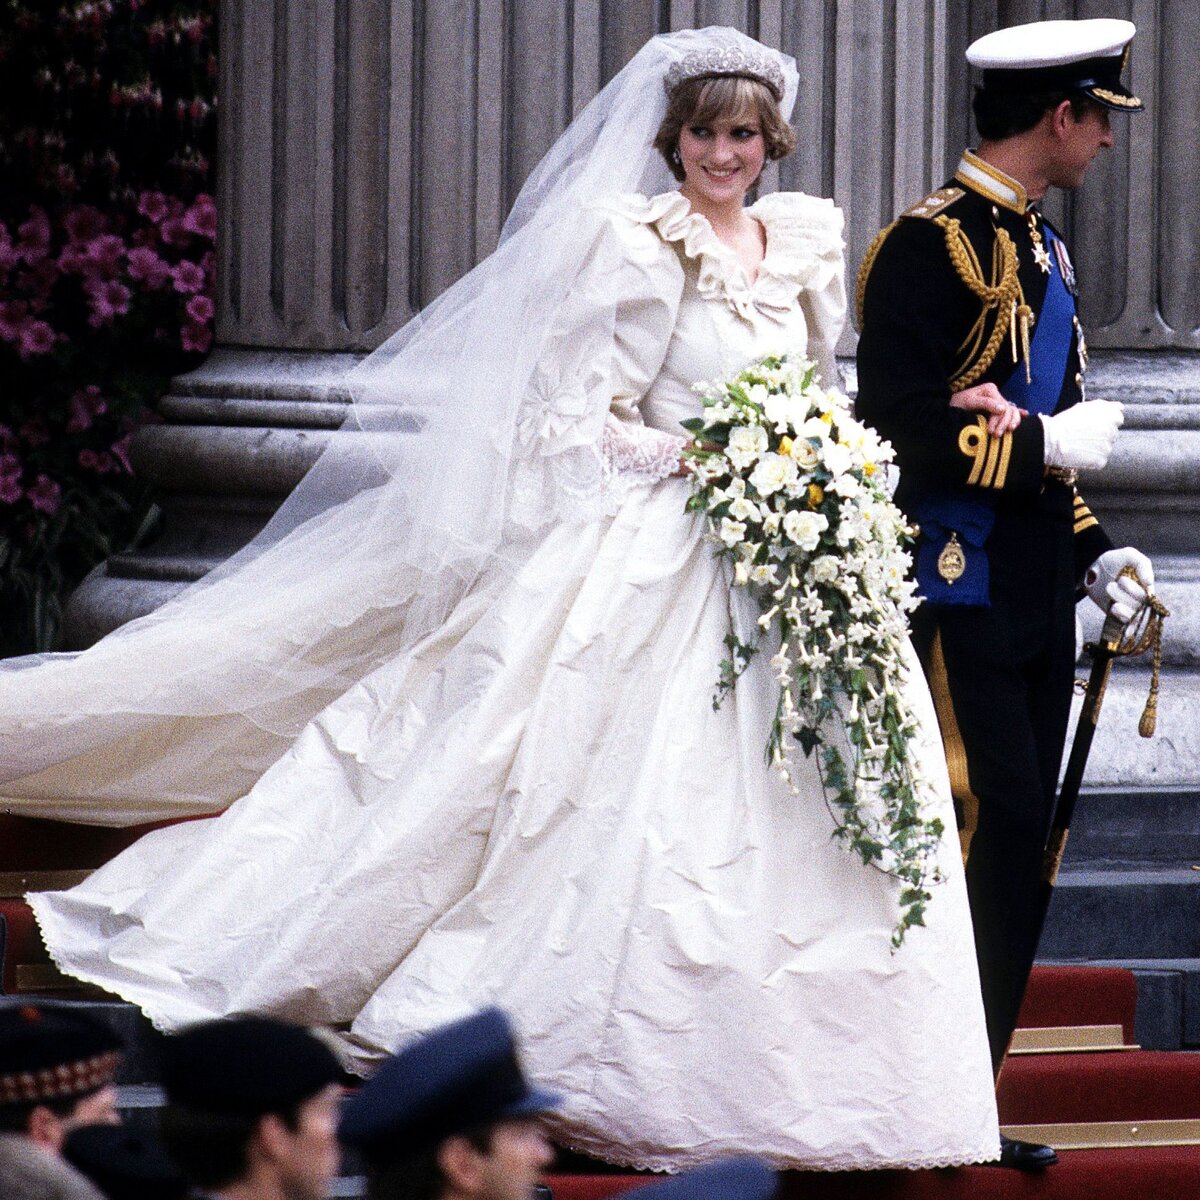  Сказочные свадебные платья королевских особ очаровывают поклонников моды по всему миру и излучают чистую романтику.-39